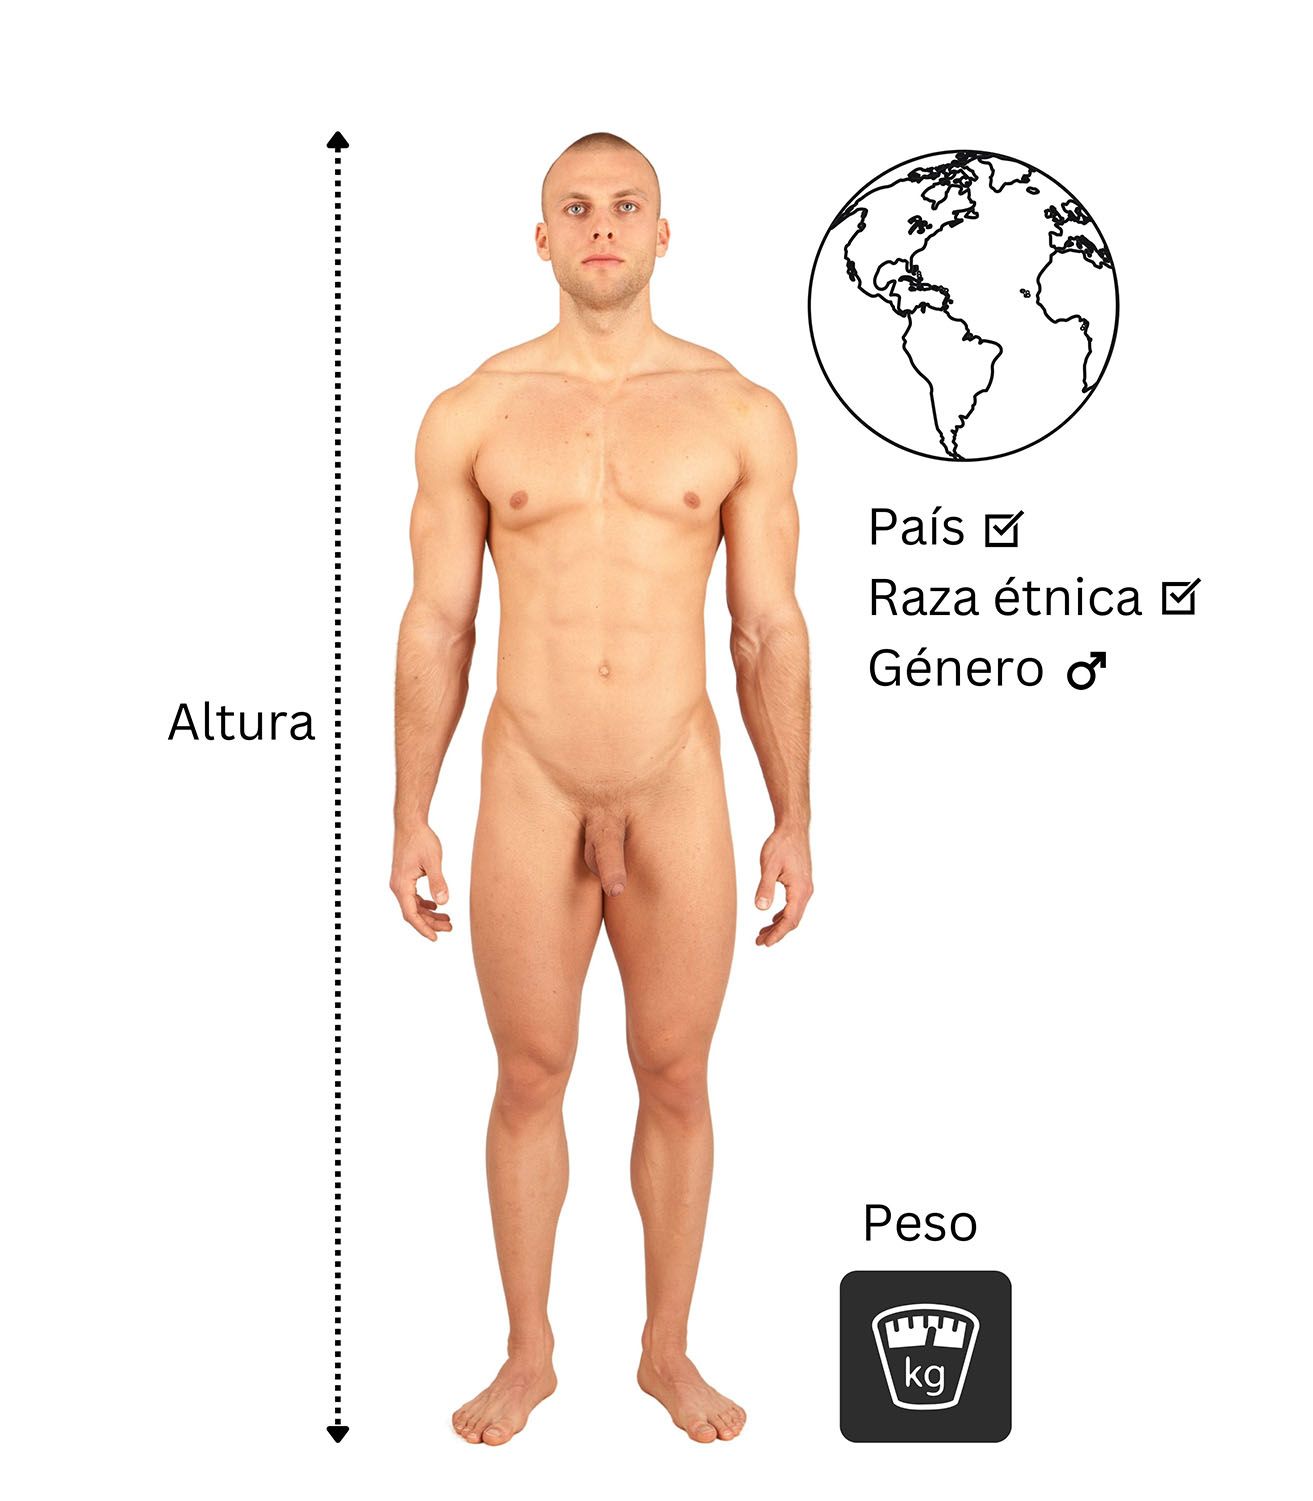 Hombre desnudo midiendo su altura, peso y origen étnico.